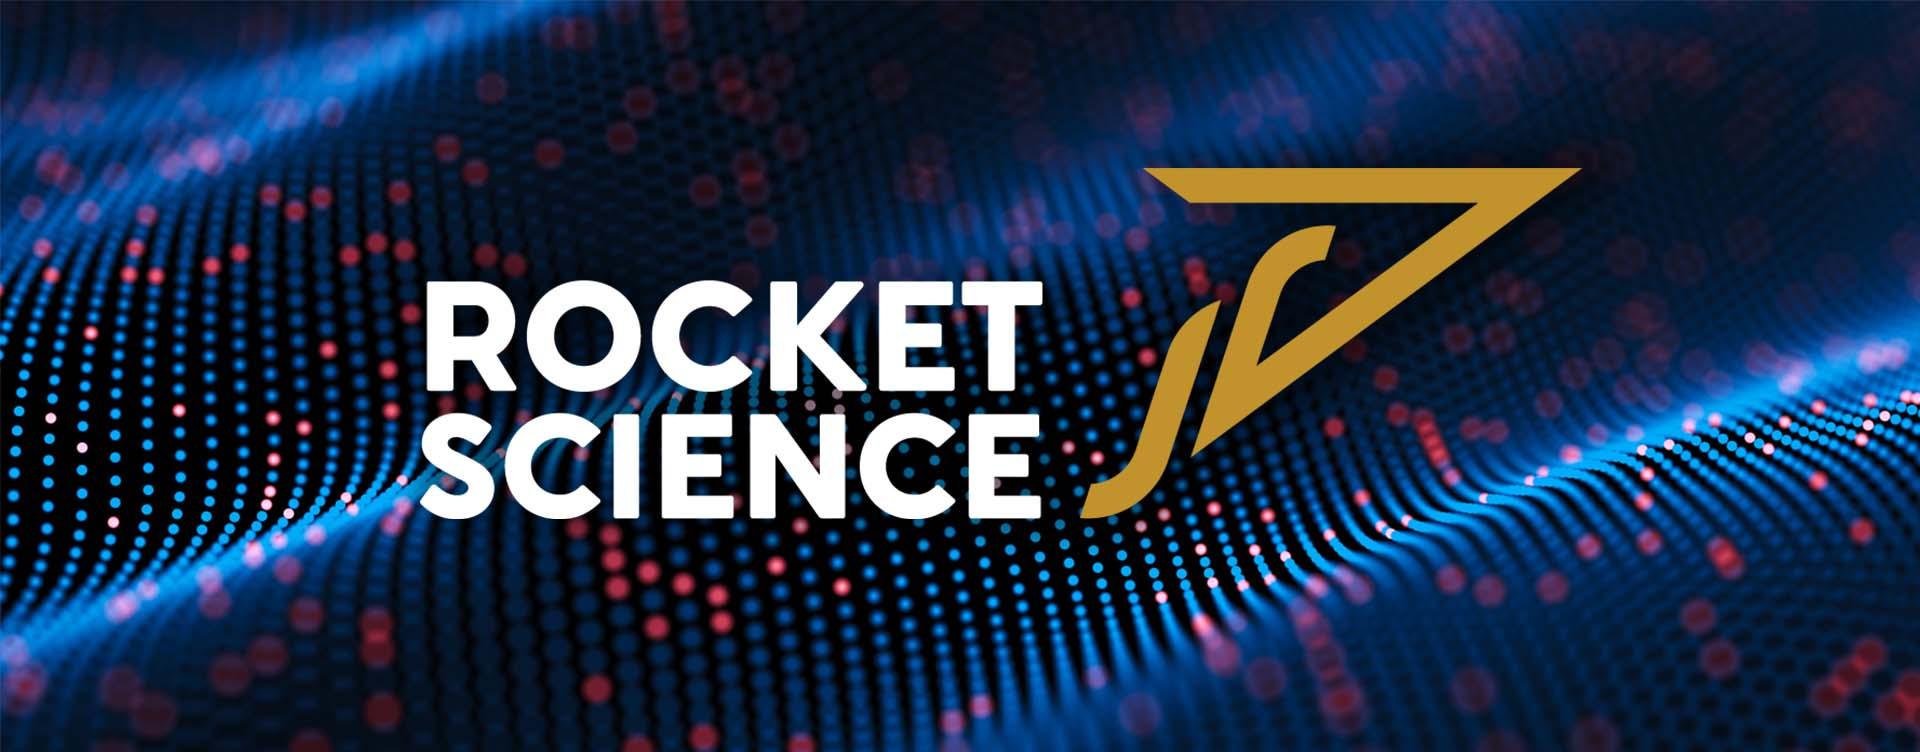 Rocket Science VFX